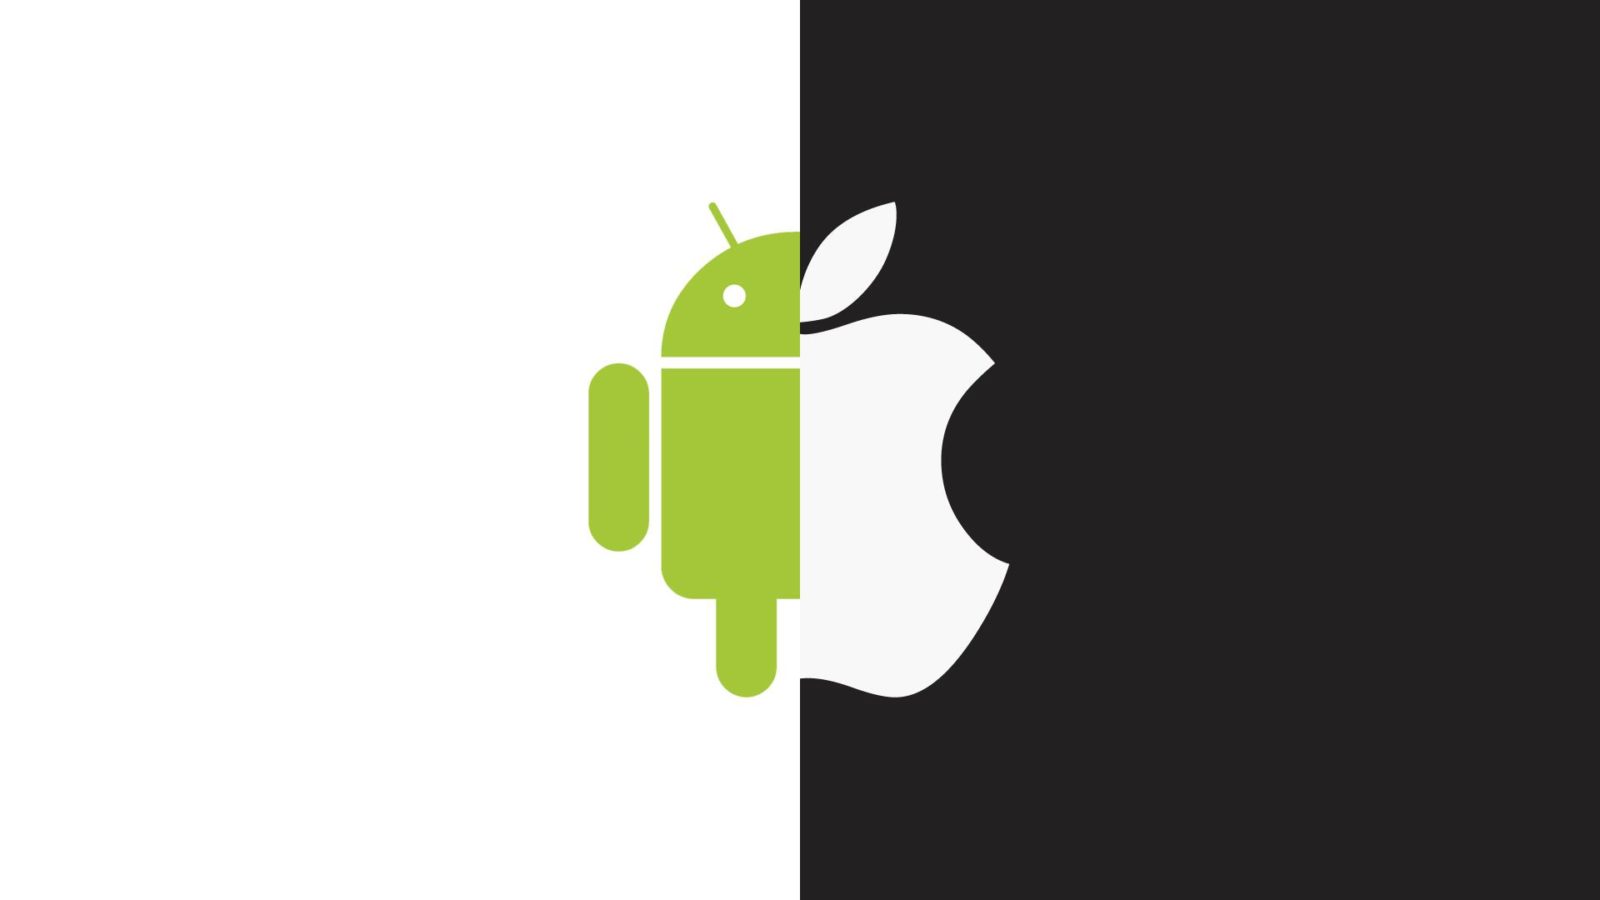 iOS догоняет Android в рейтинге лояльности потребителей